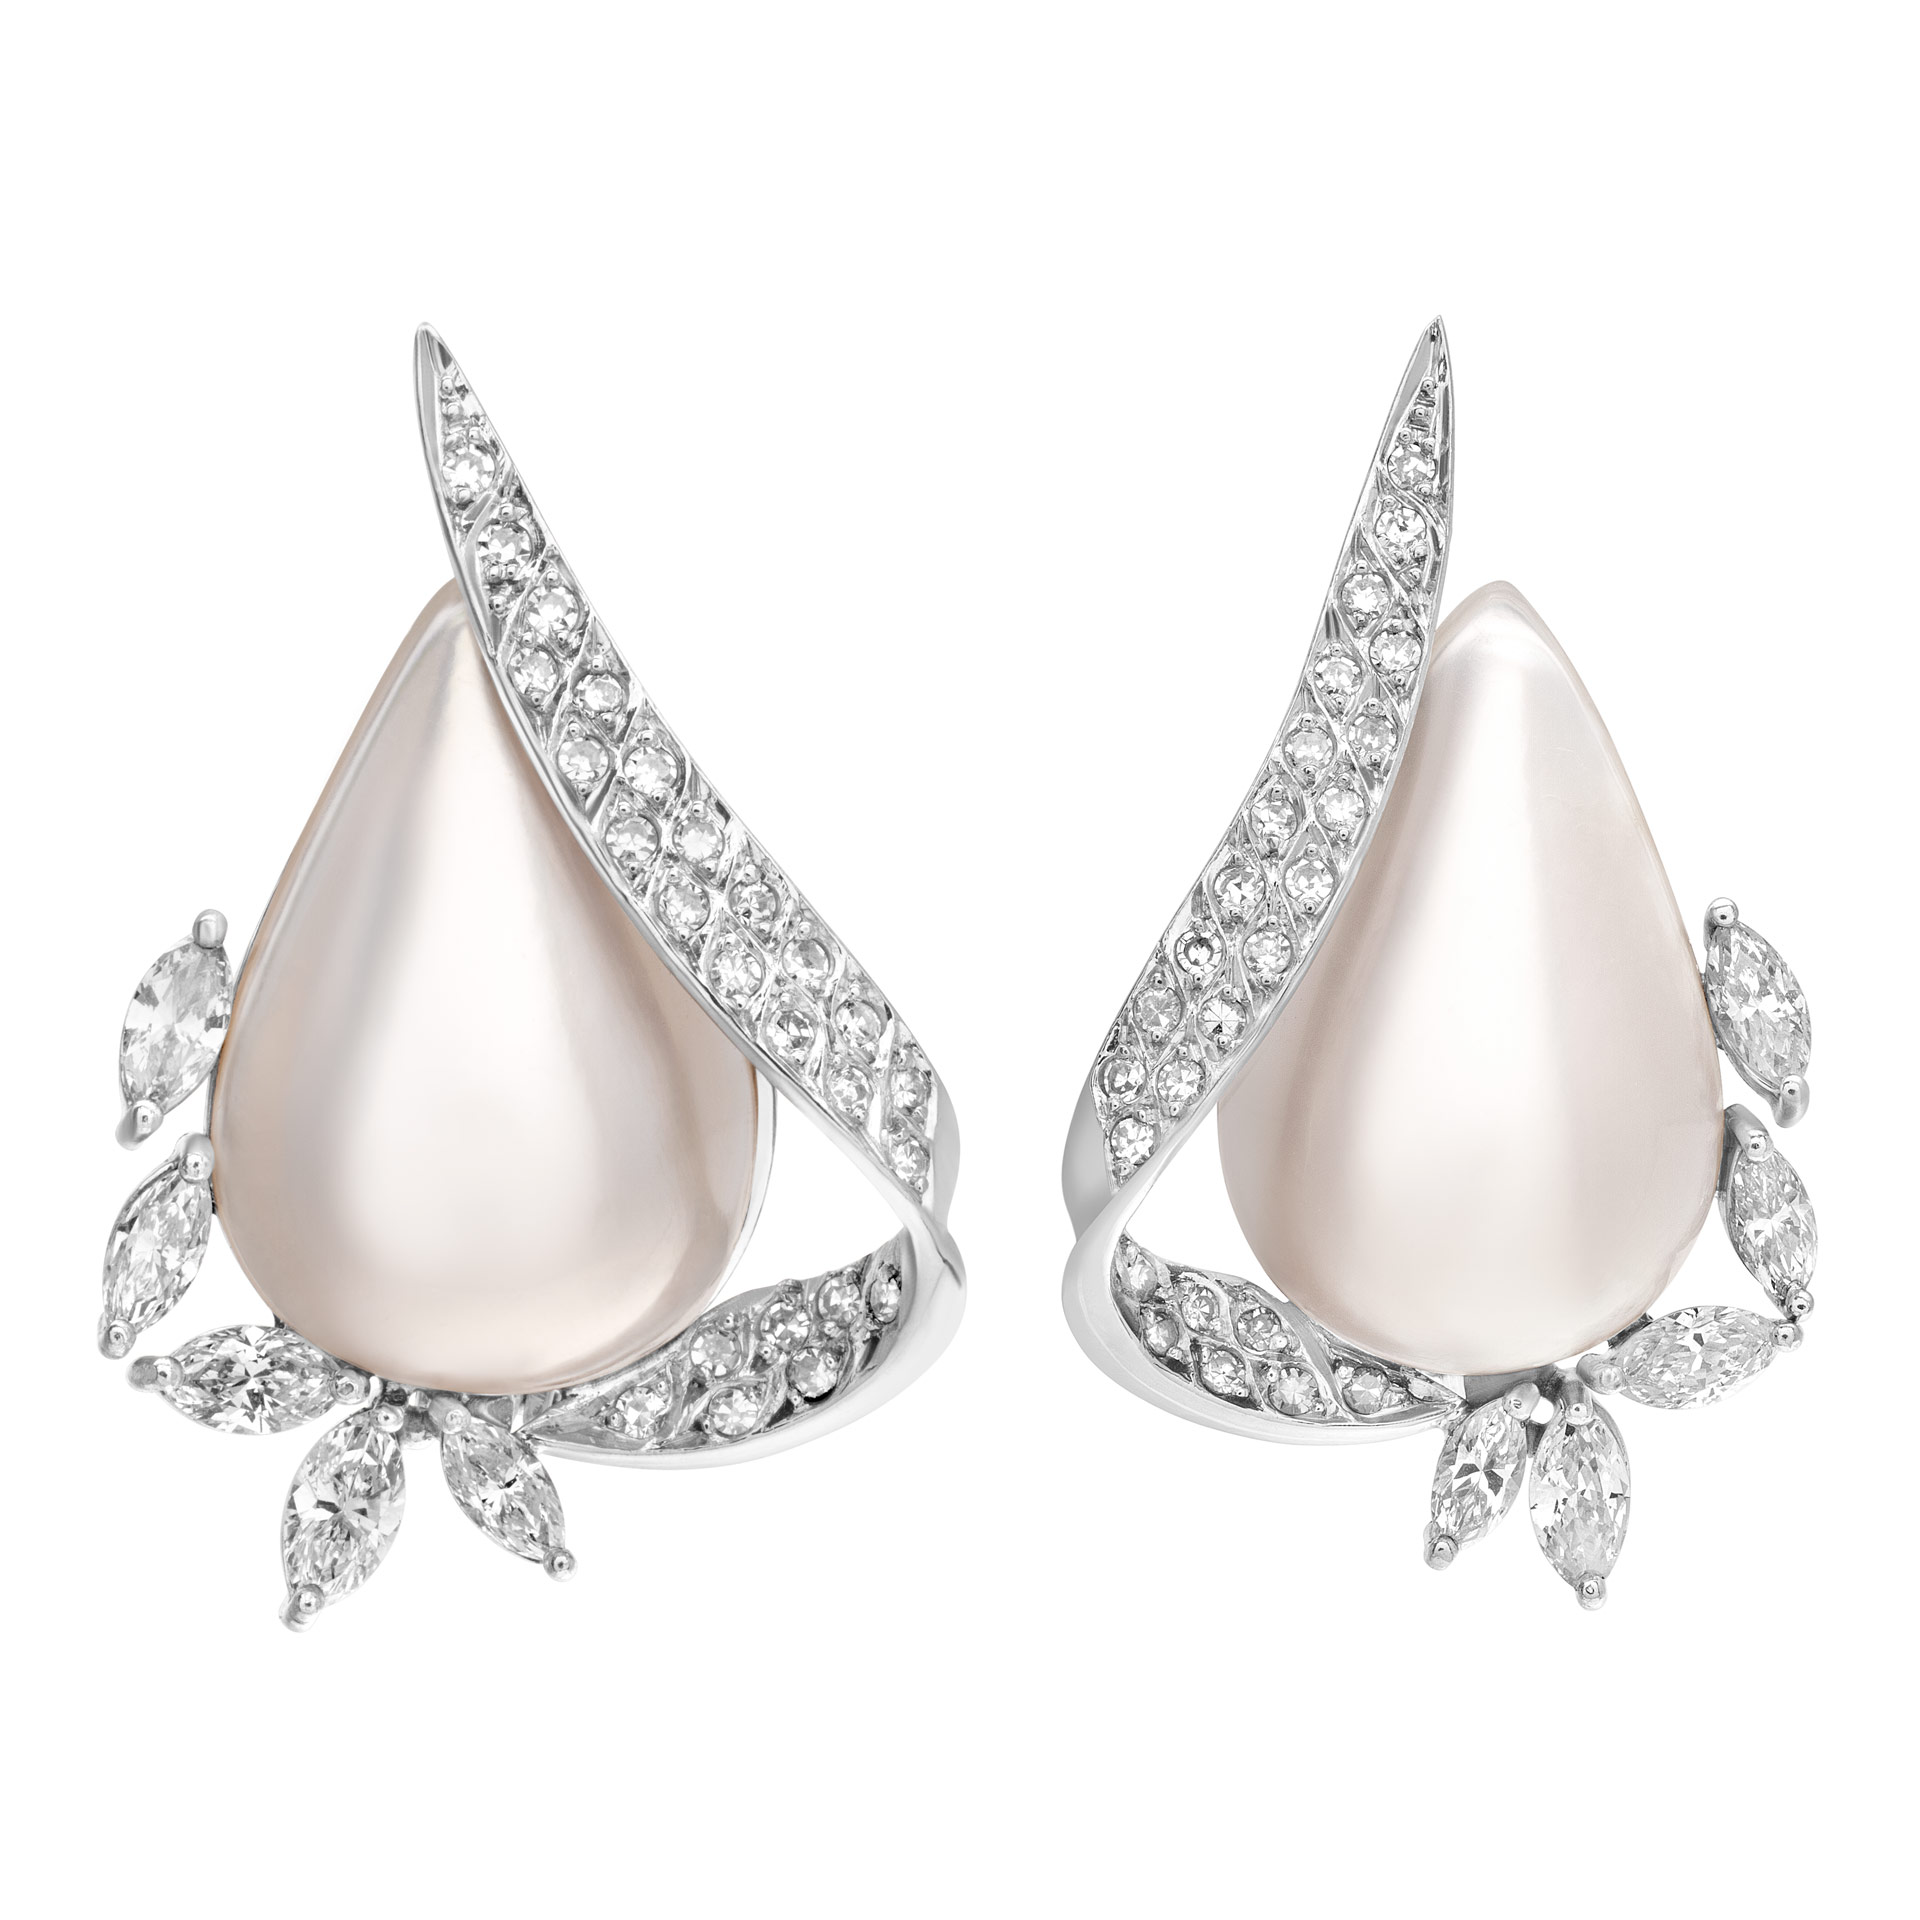 Tear drop mobe pearl & diamond earrings in 18k white gold. 1.50cts in diamonds